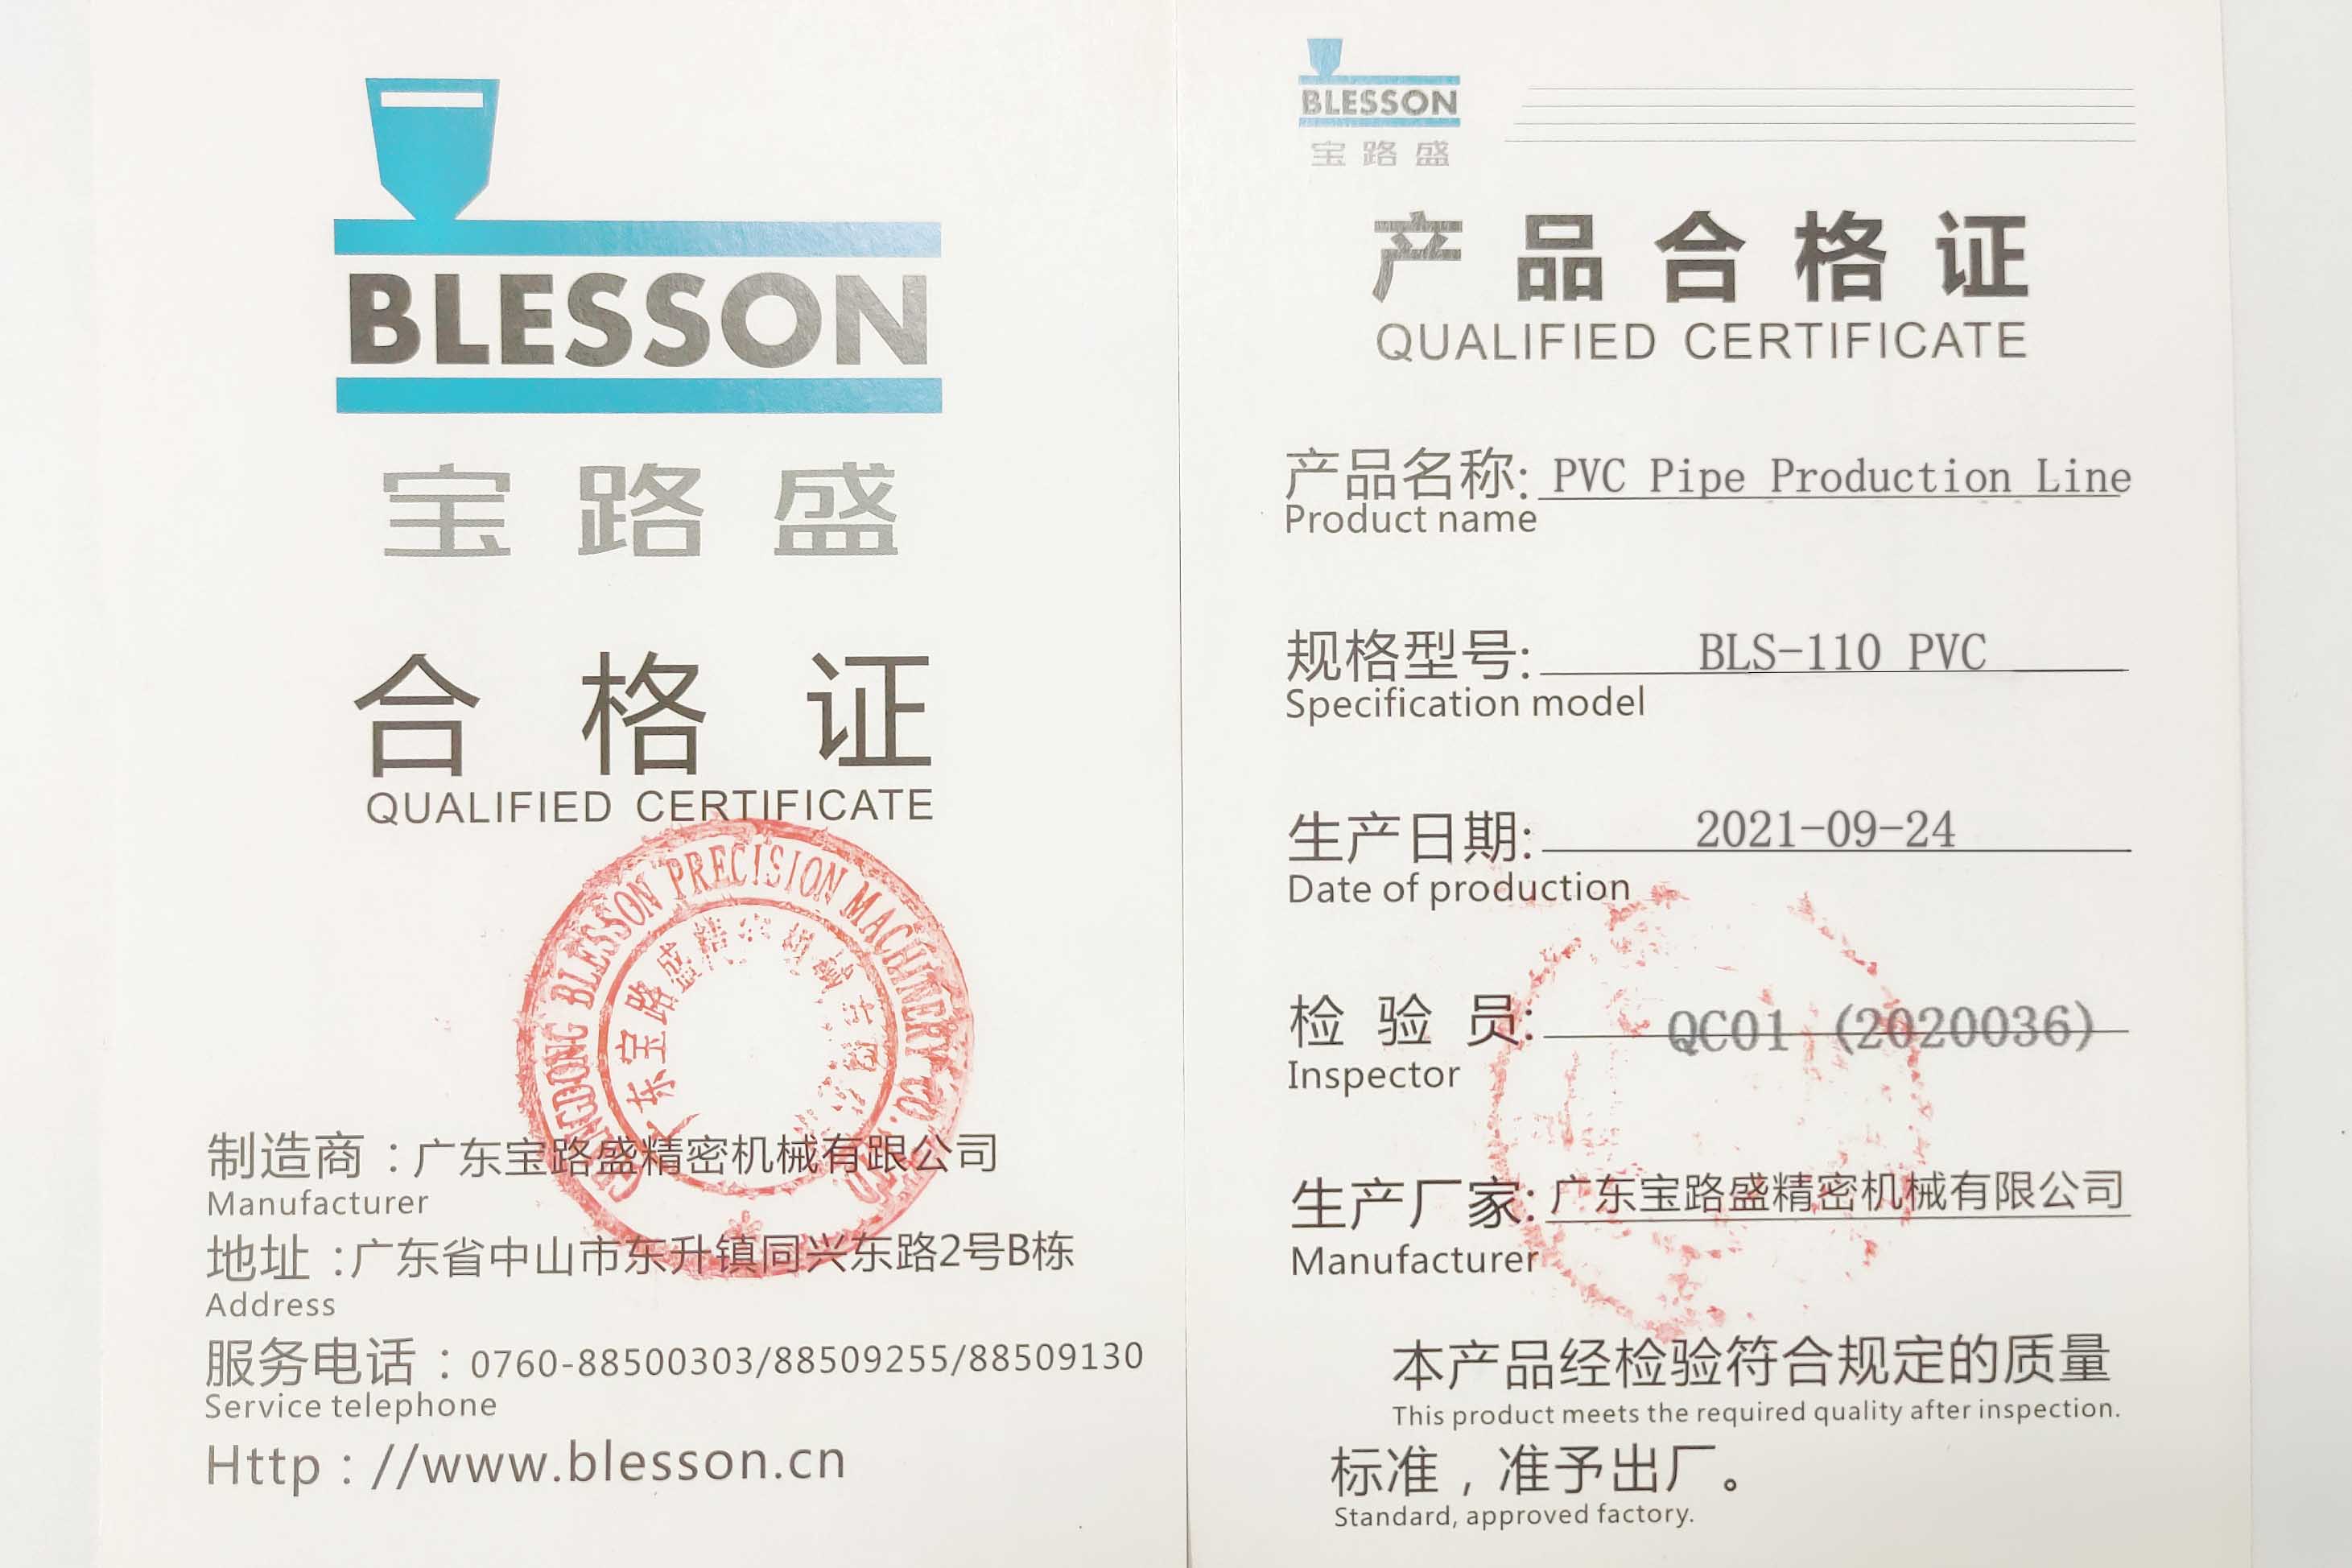 Blesson machinery компаниясының PVC құбырларын өндіру желісі өнімінің сертификаты